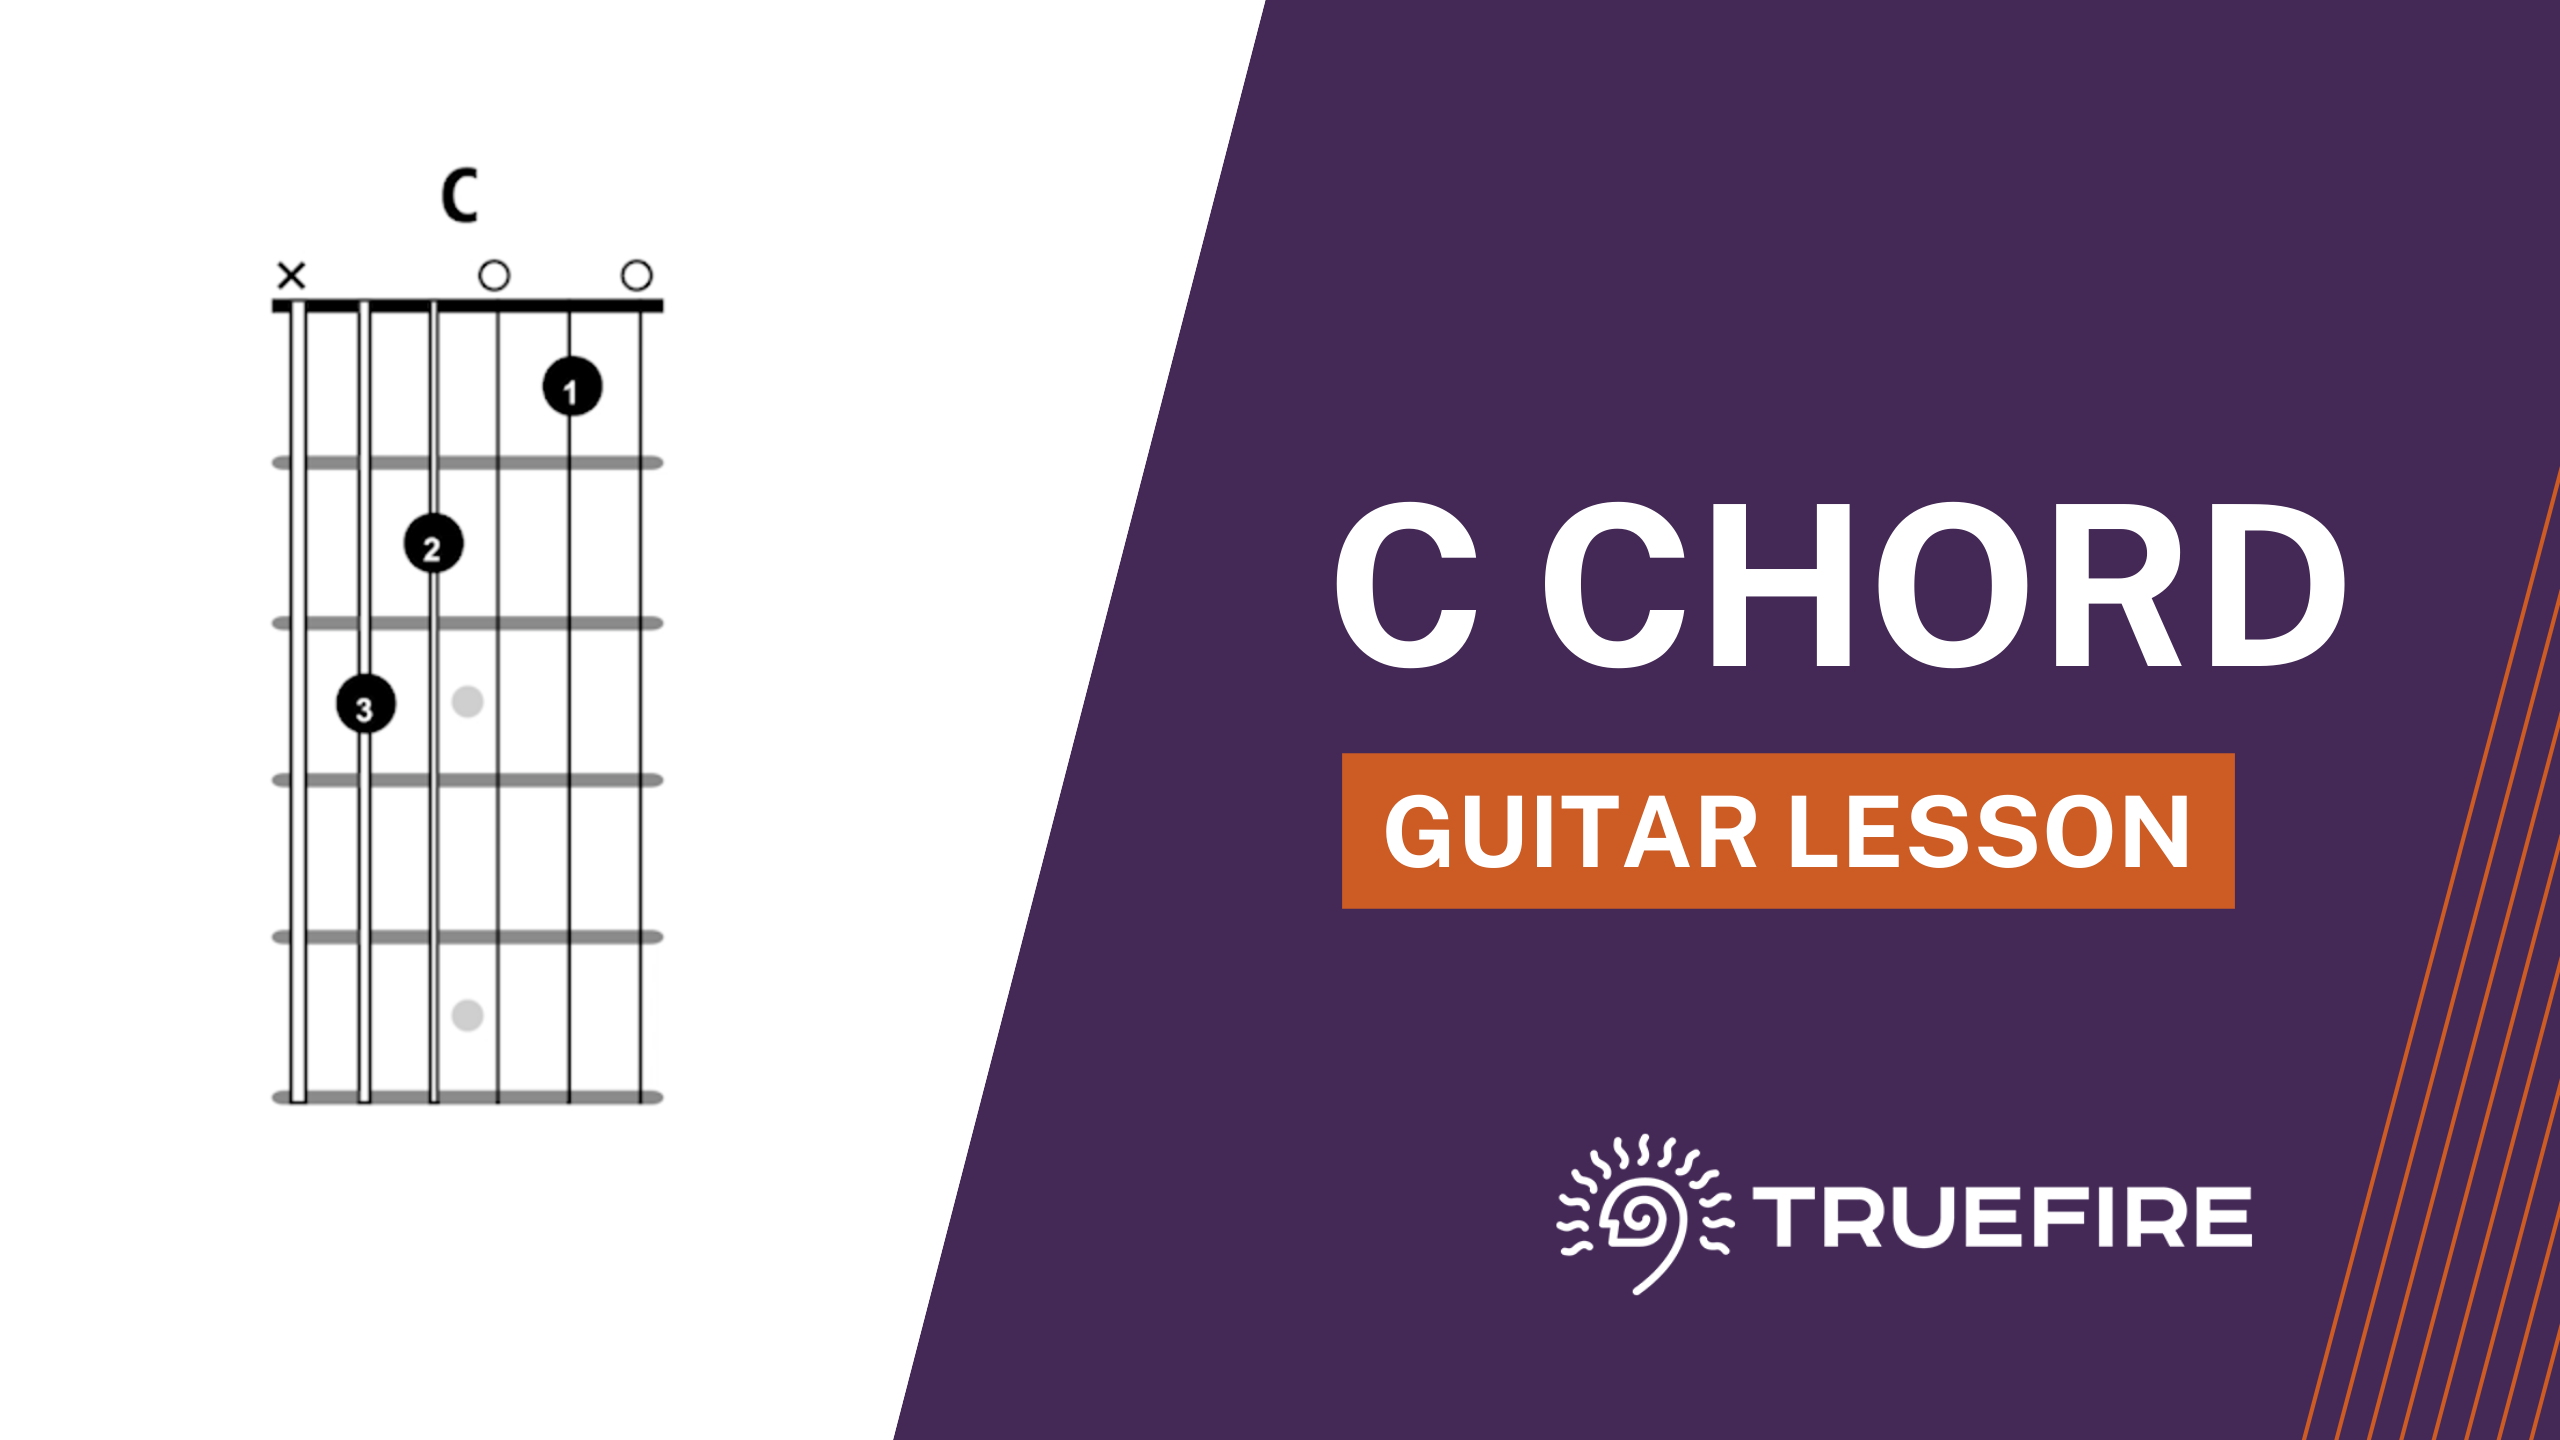 C Chord Guitar Lesson